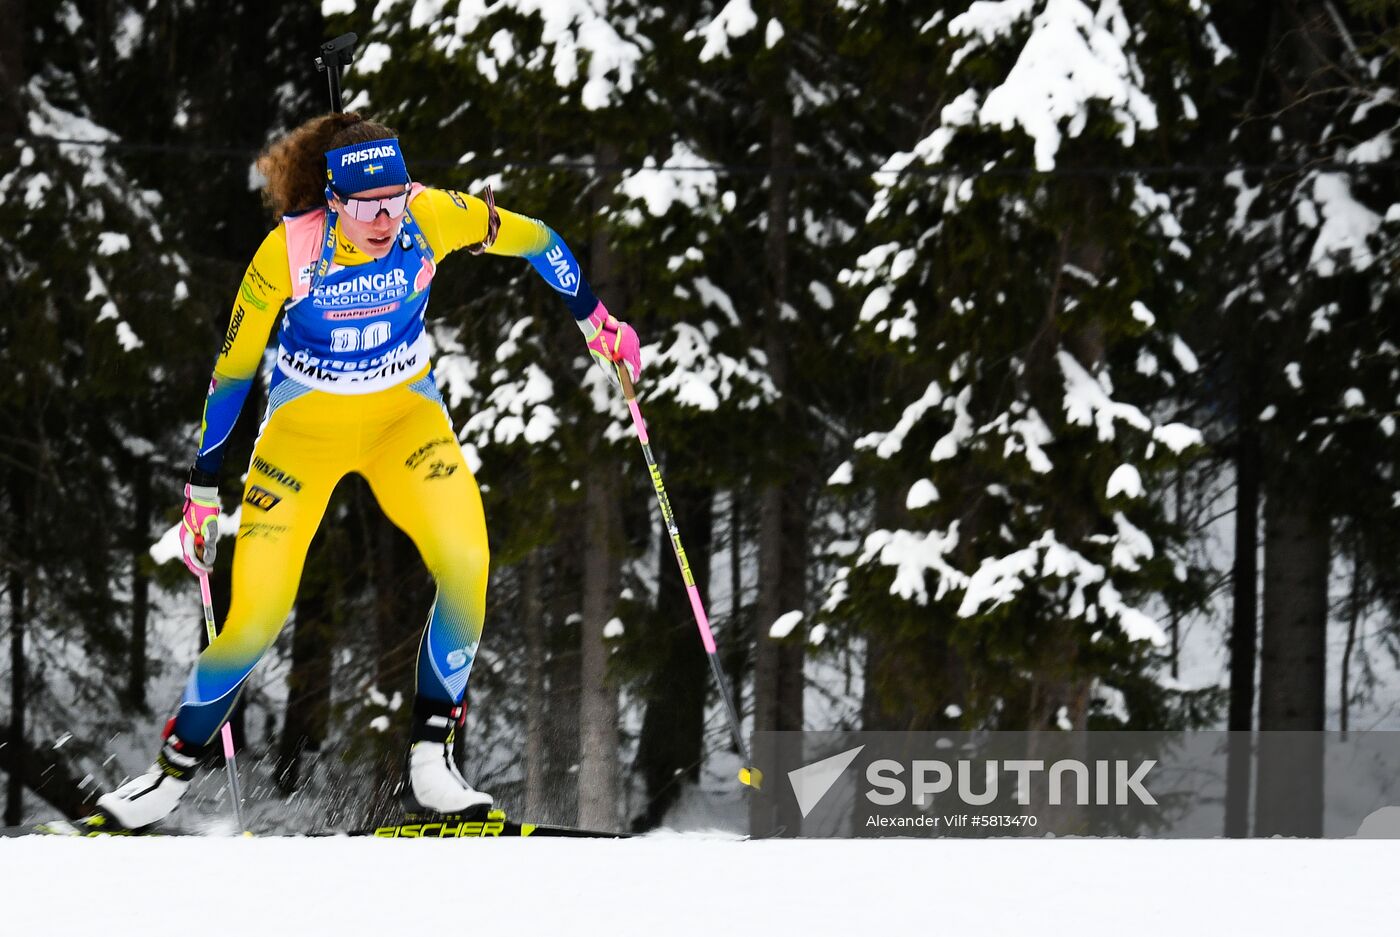 Sweden Biathlon Worlds Individual Competition Women